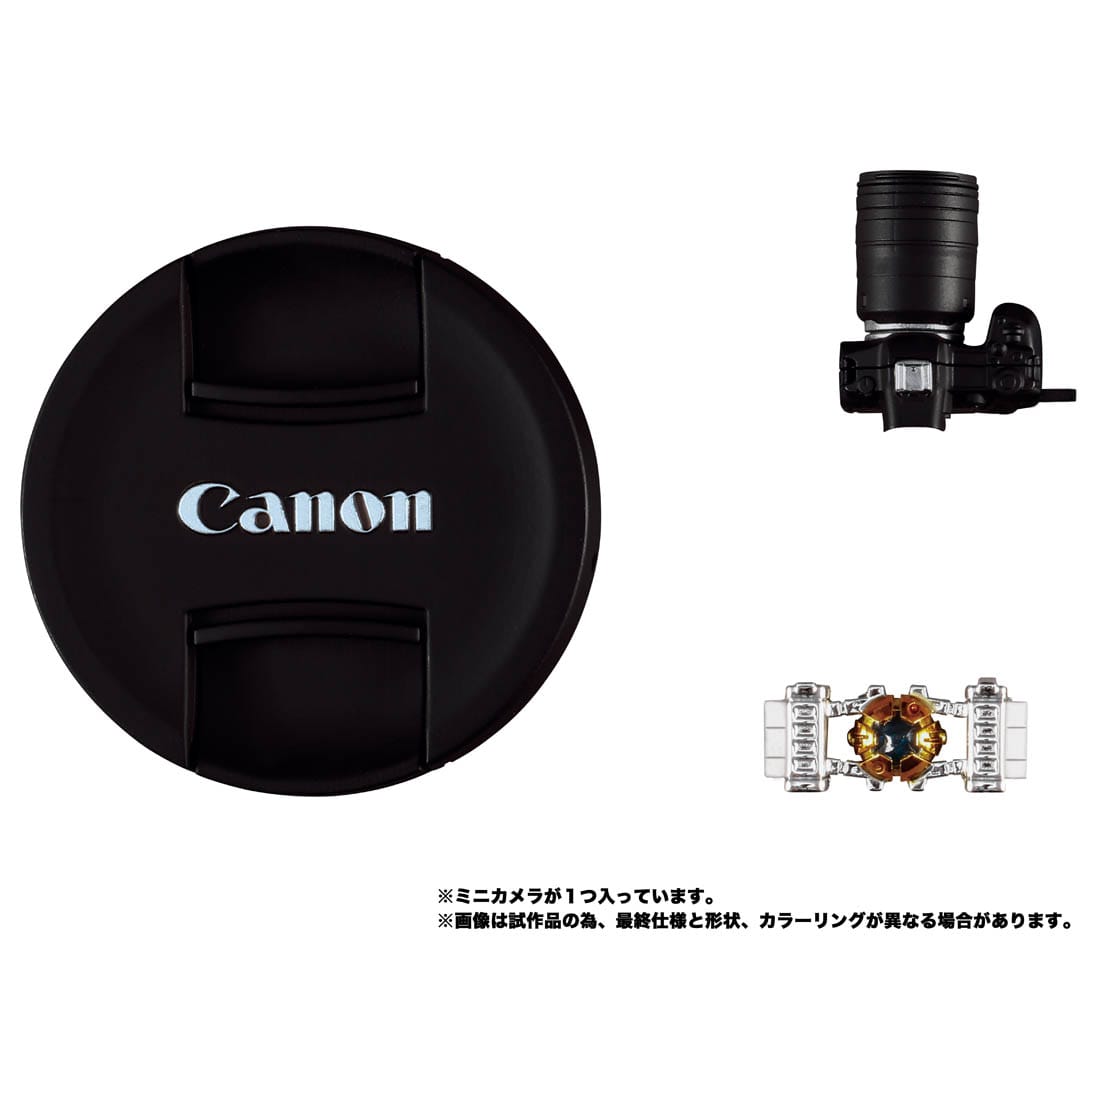 Canon/TRANSFORMERS オプティマスプライムR5 | 鉄道模型・プラモデル ...